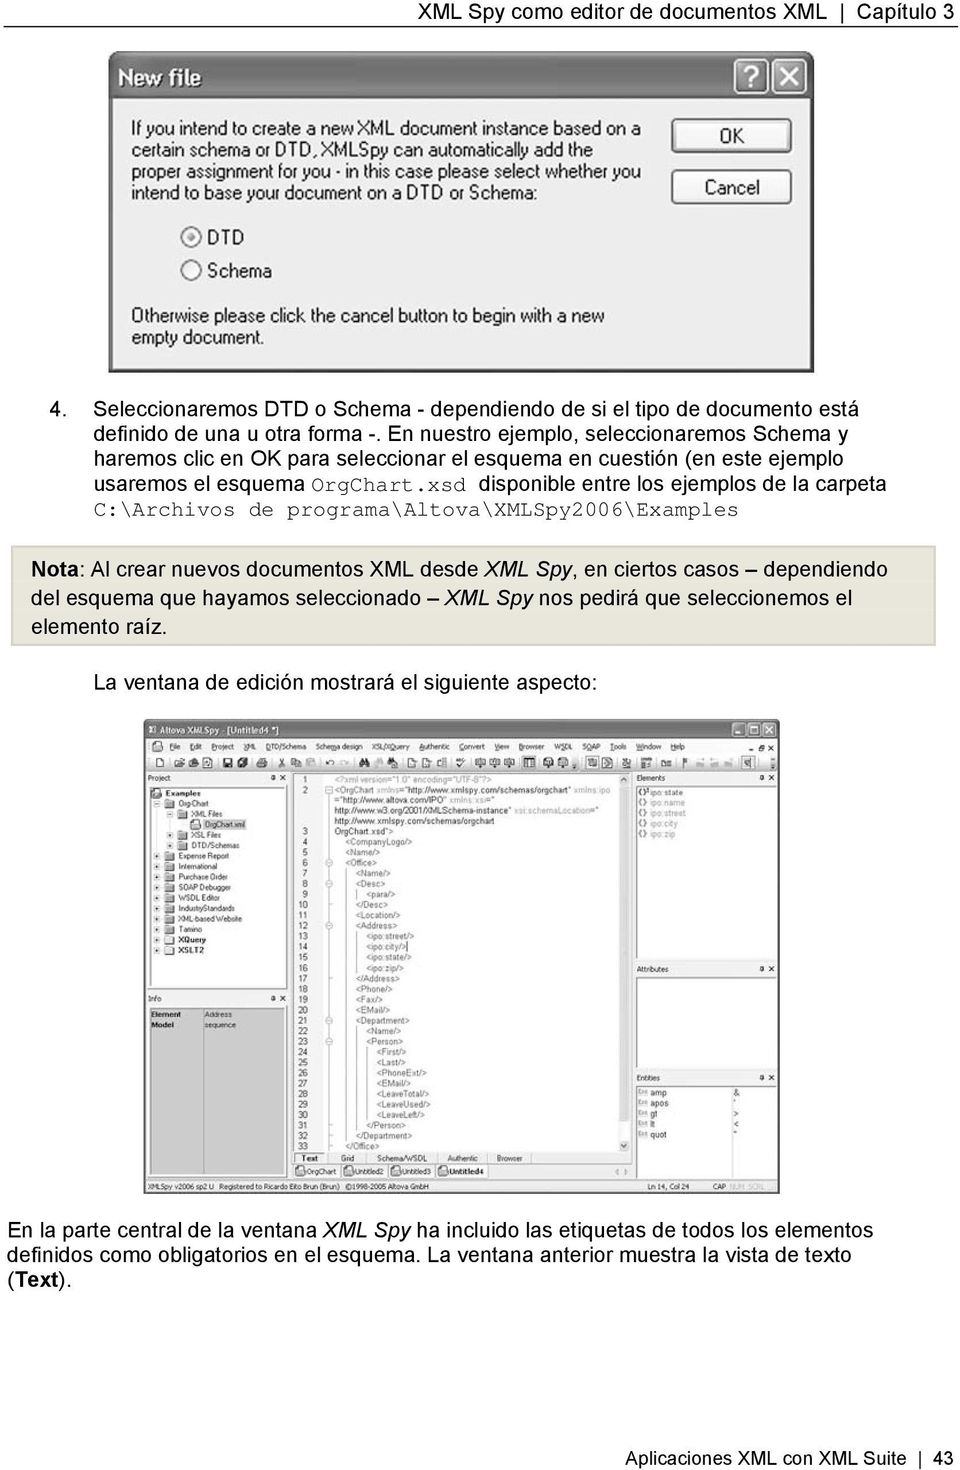 xsd disponible entre los ejemplos de la carpeta C:\Archivos de programa\altova\xmlspy2006\examples Nota: Al crear nuevos documentos XML desde XML Spy, en ciertos casos dependiendo del esquema que